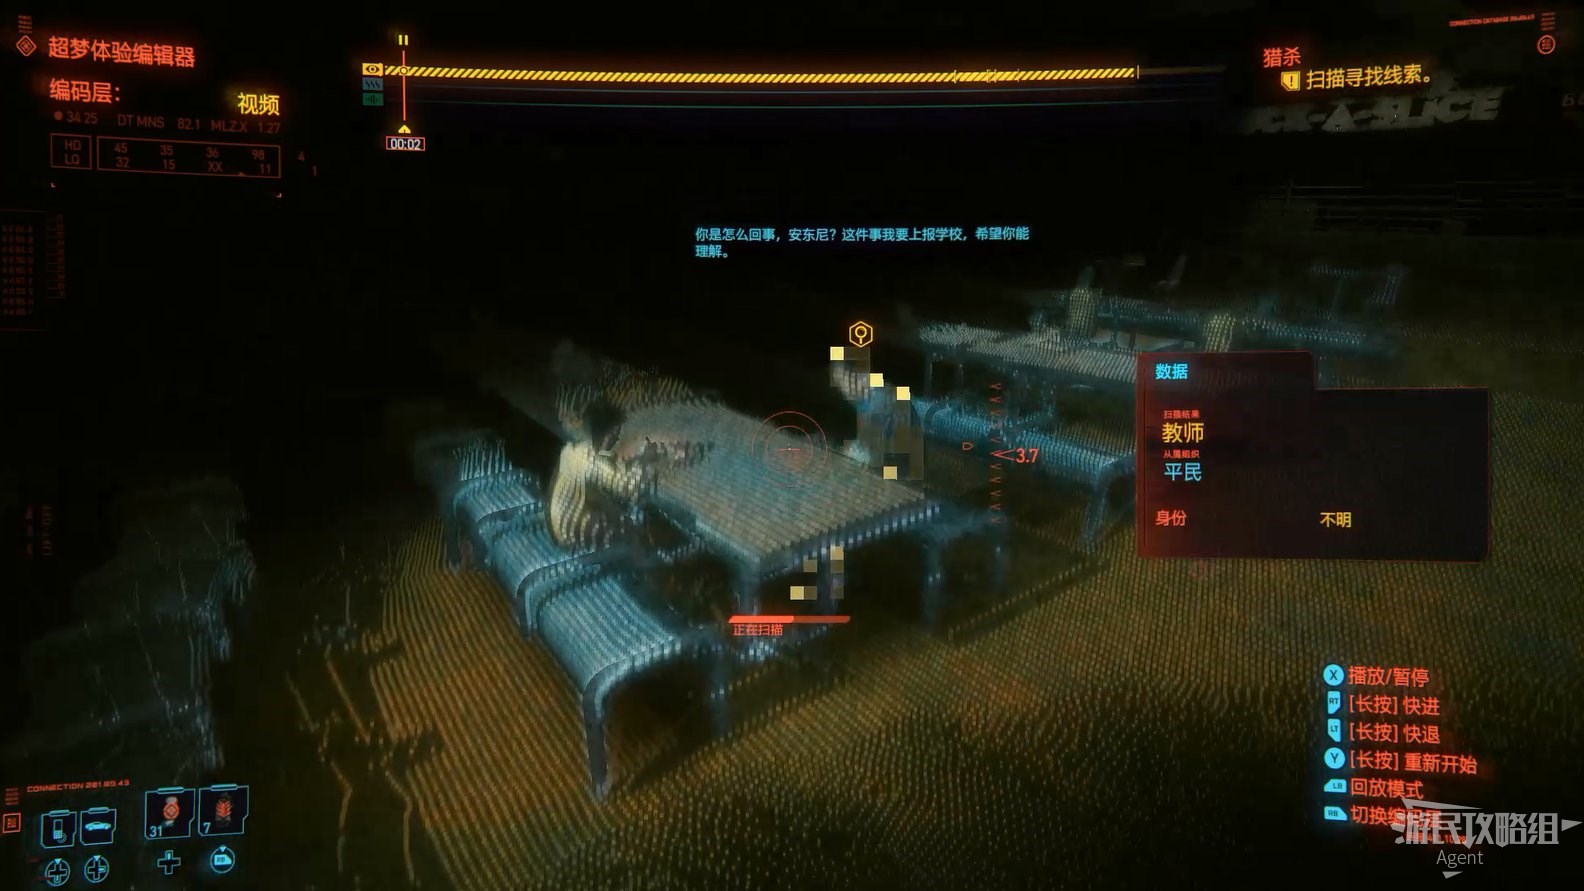 《電馭叛客2077》圖文攻略 主線流程、可選任務及重要支線攻略